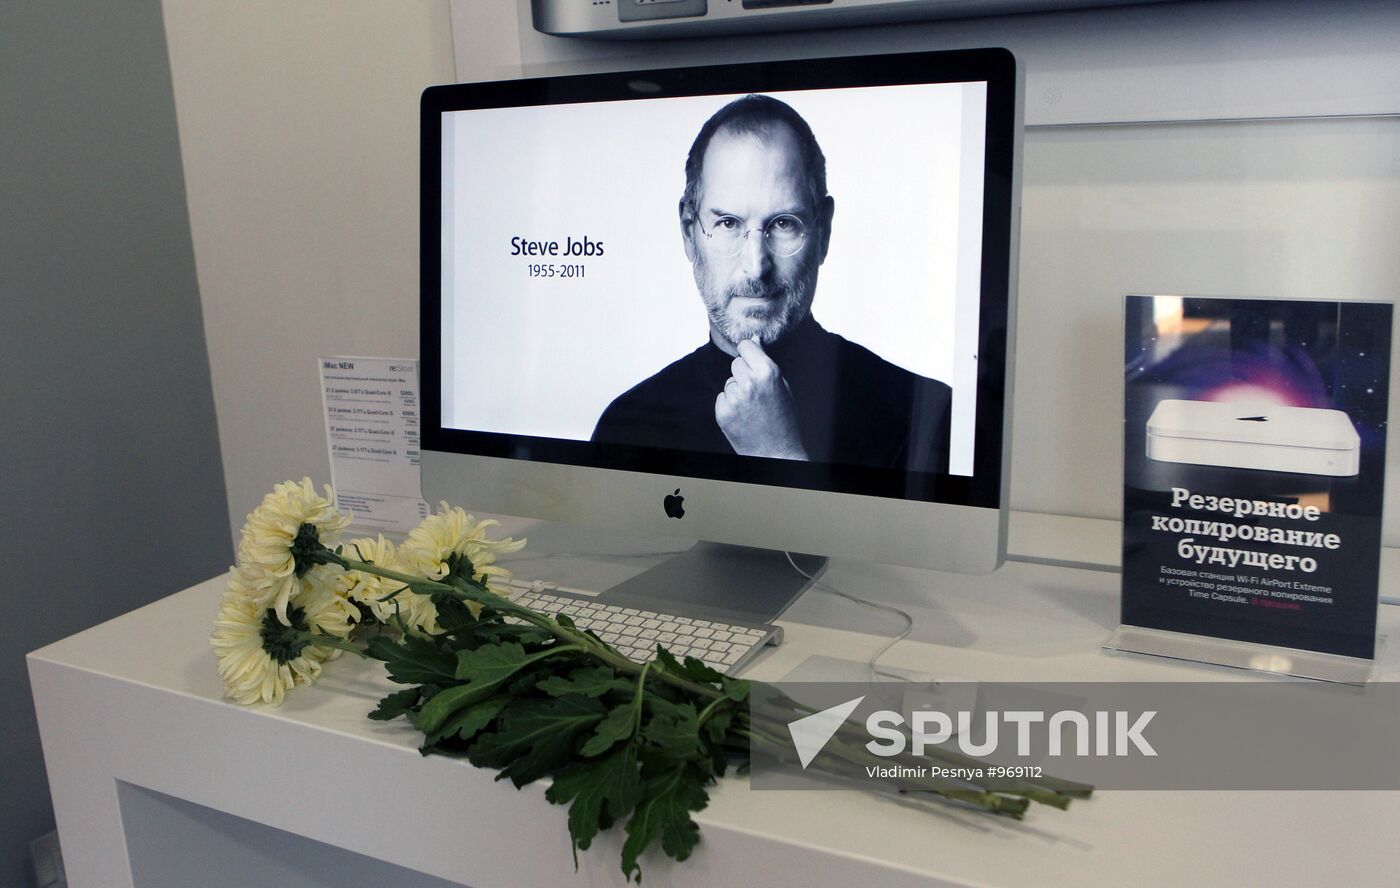 Apple founder Steve Jobs passes away at 56